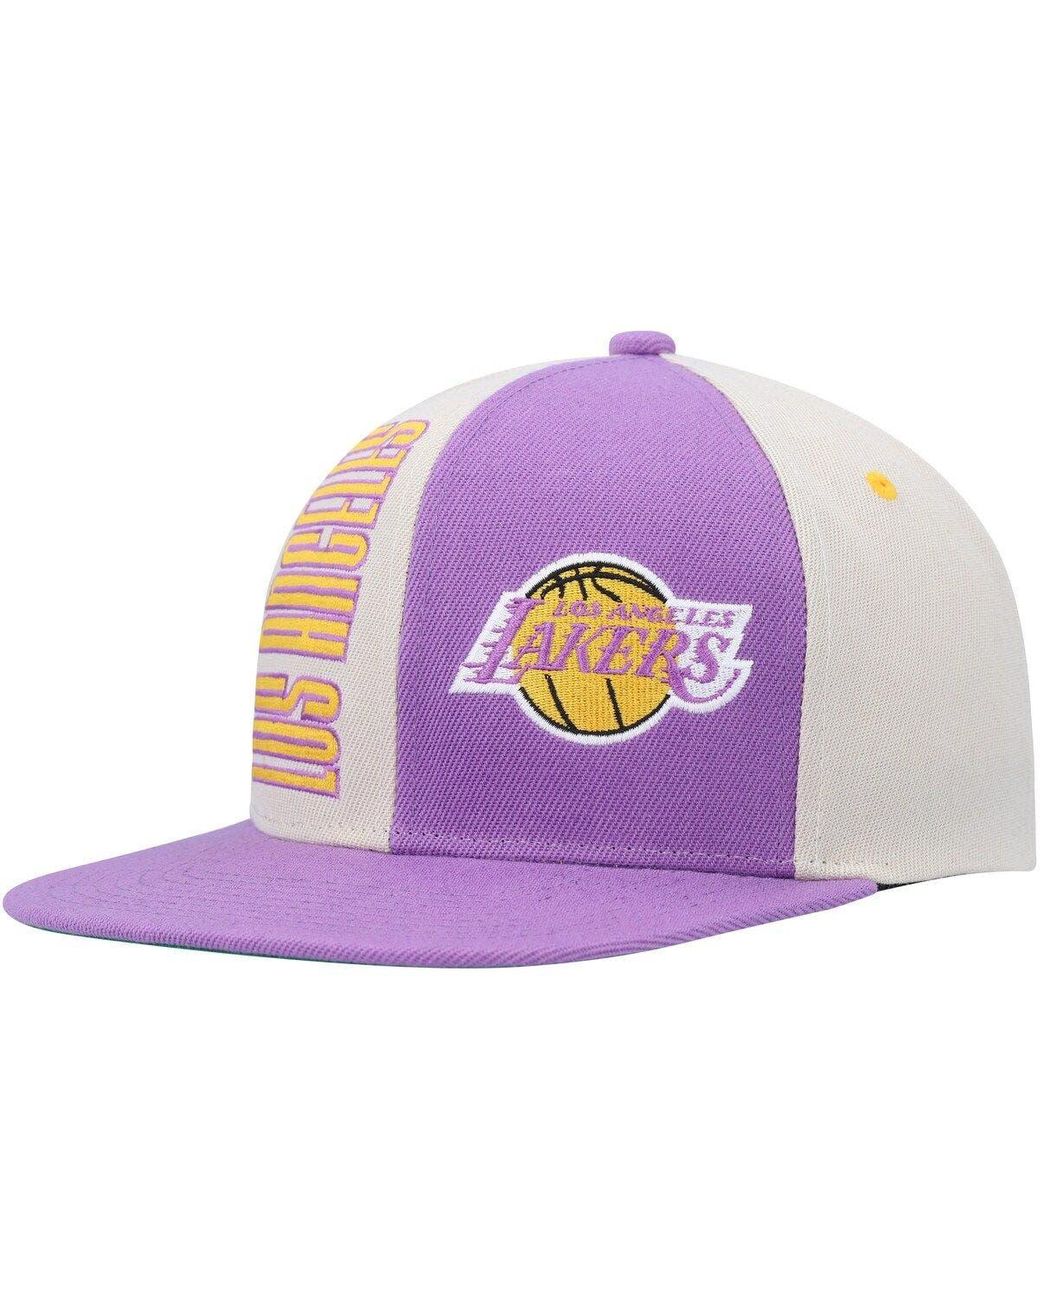 Mitchell and Ness XL Logo 2 Tone LA Lakers Snapback - Gold/Purple